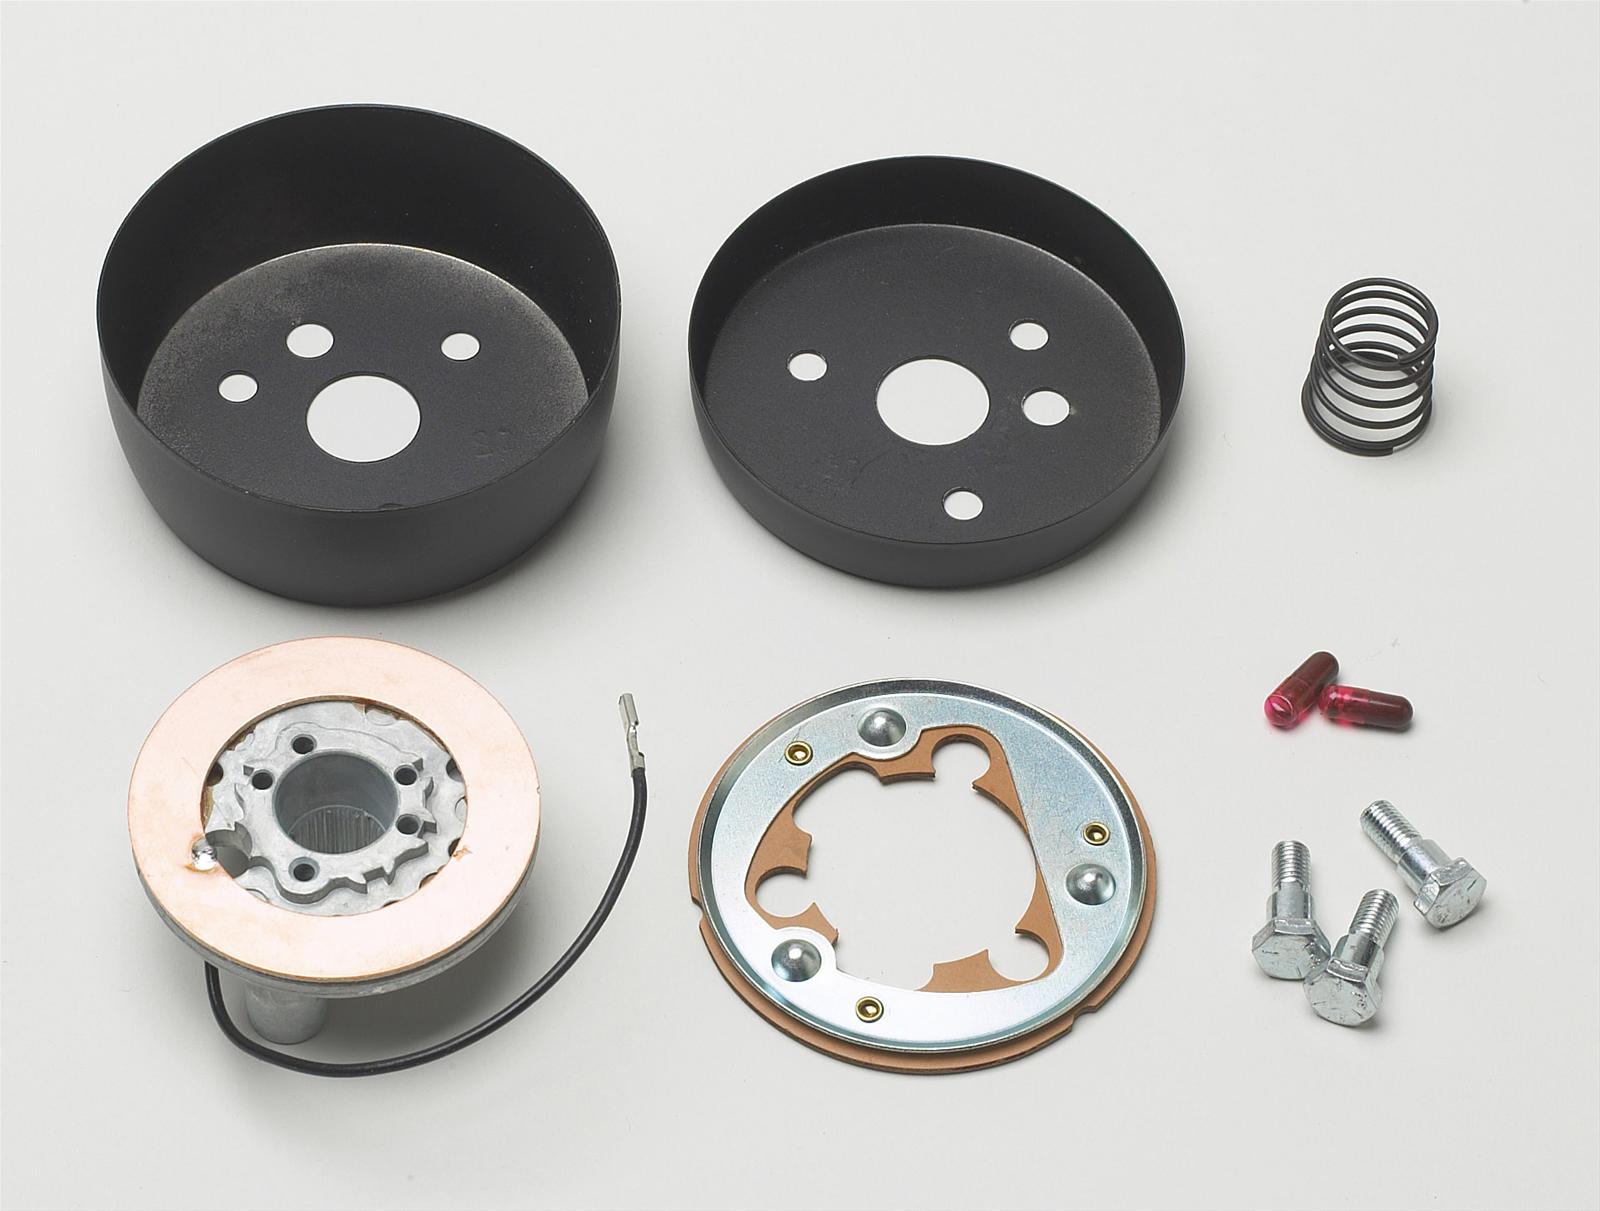 TRW Steering Wheel. Steering Wheel Hub for Opel Corsa b. Walwer z50 grinding Wheel Adapters. Fl0000007903825 installation Kit.